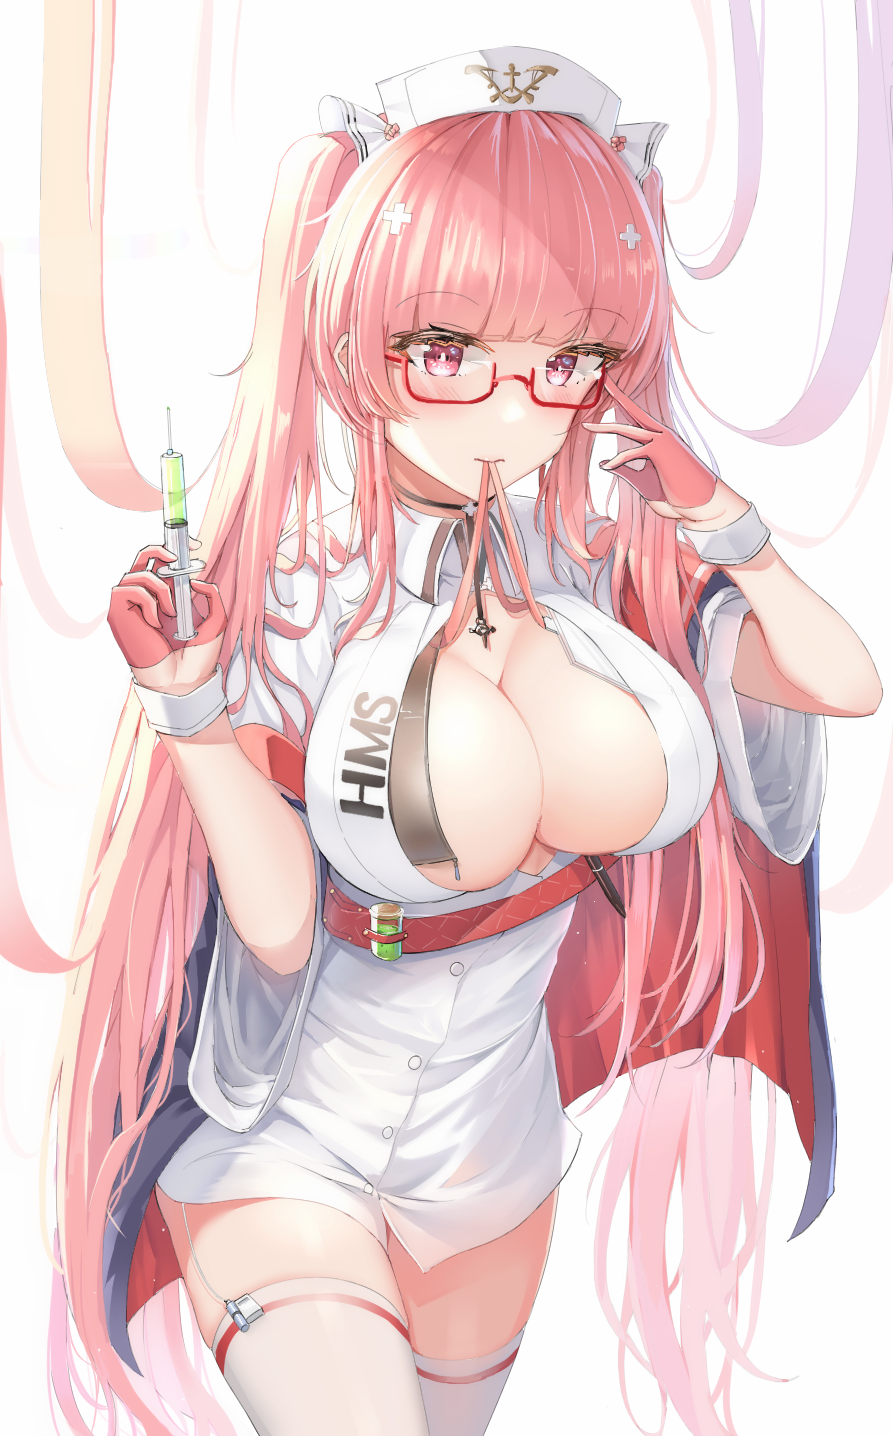 Anime 893x1436 anime anime girls Futasan Azur Lane Perseus (Azur Lane) boobs cleavage big boobs long hair pink hair pink eyes glasses nurses nurse outfit